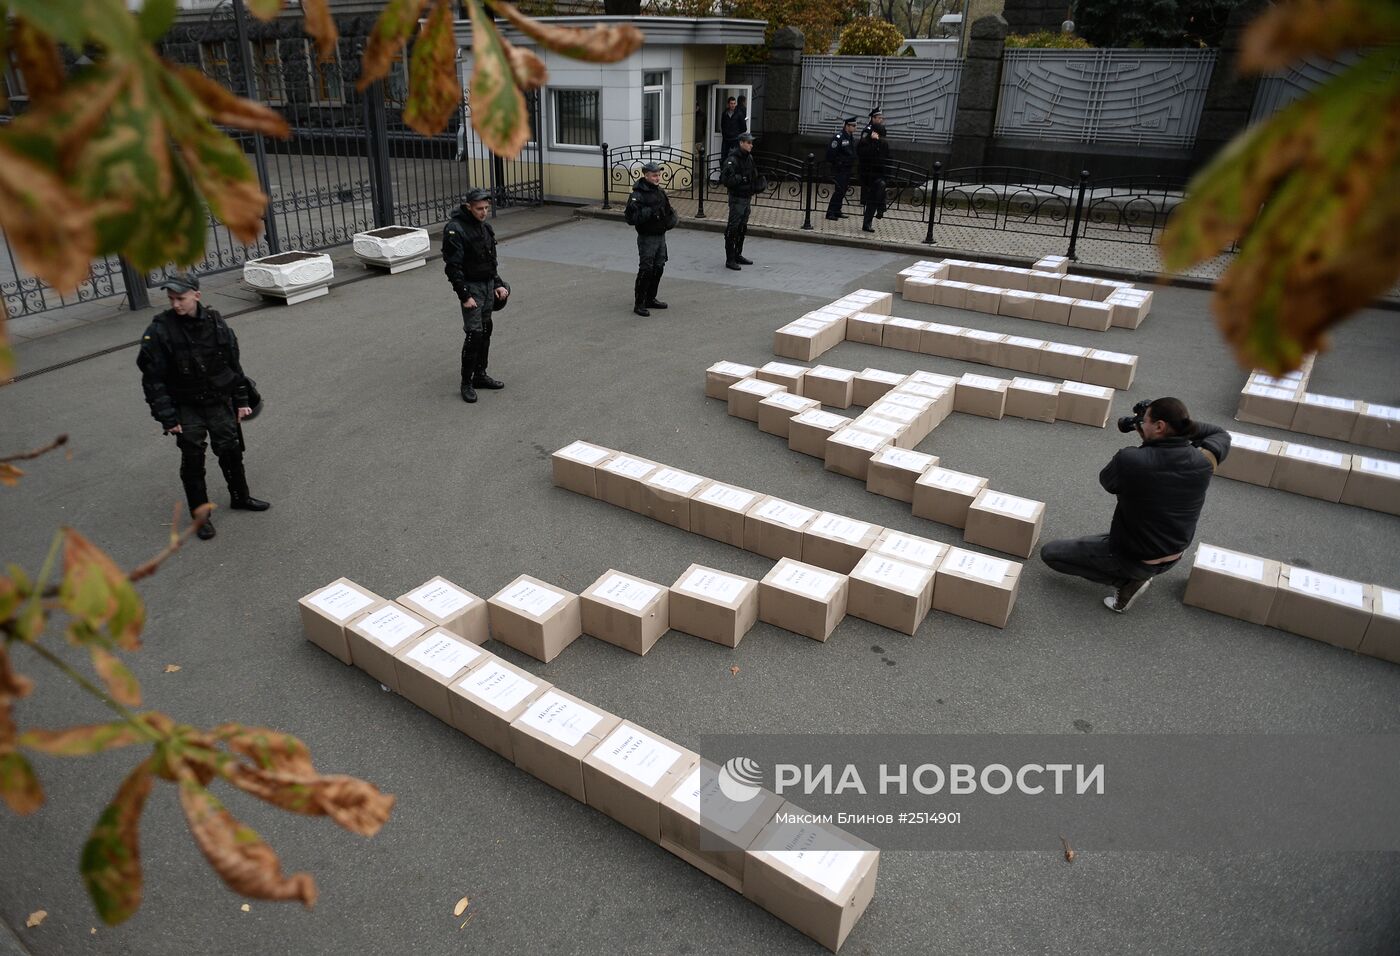 Партия "Батькивщина" представила 3 миллиона подписей за проведение референдума о вступлении Украины в НАТО